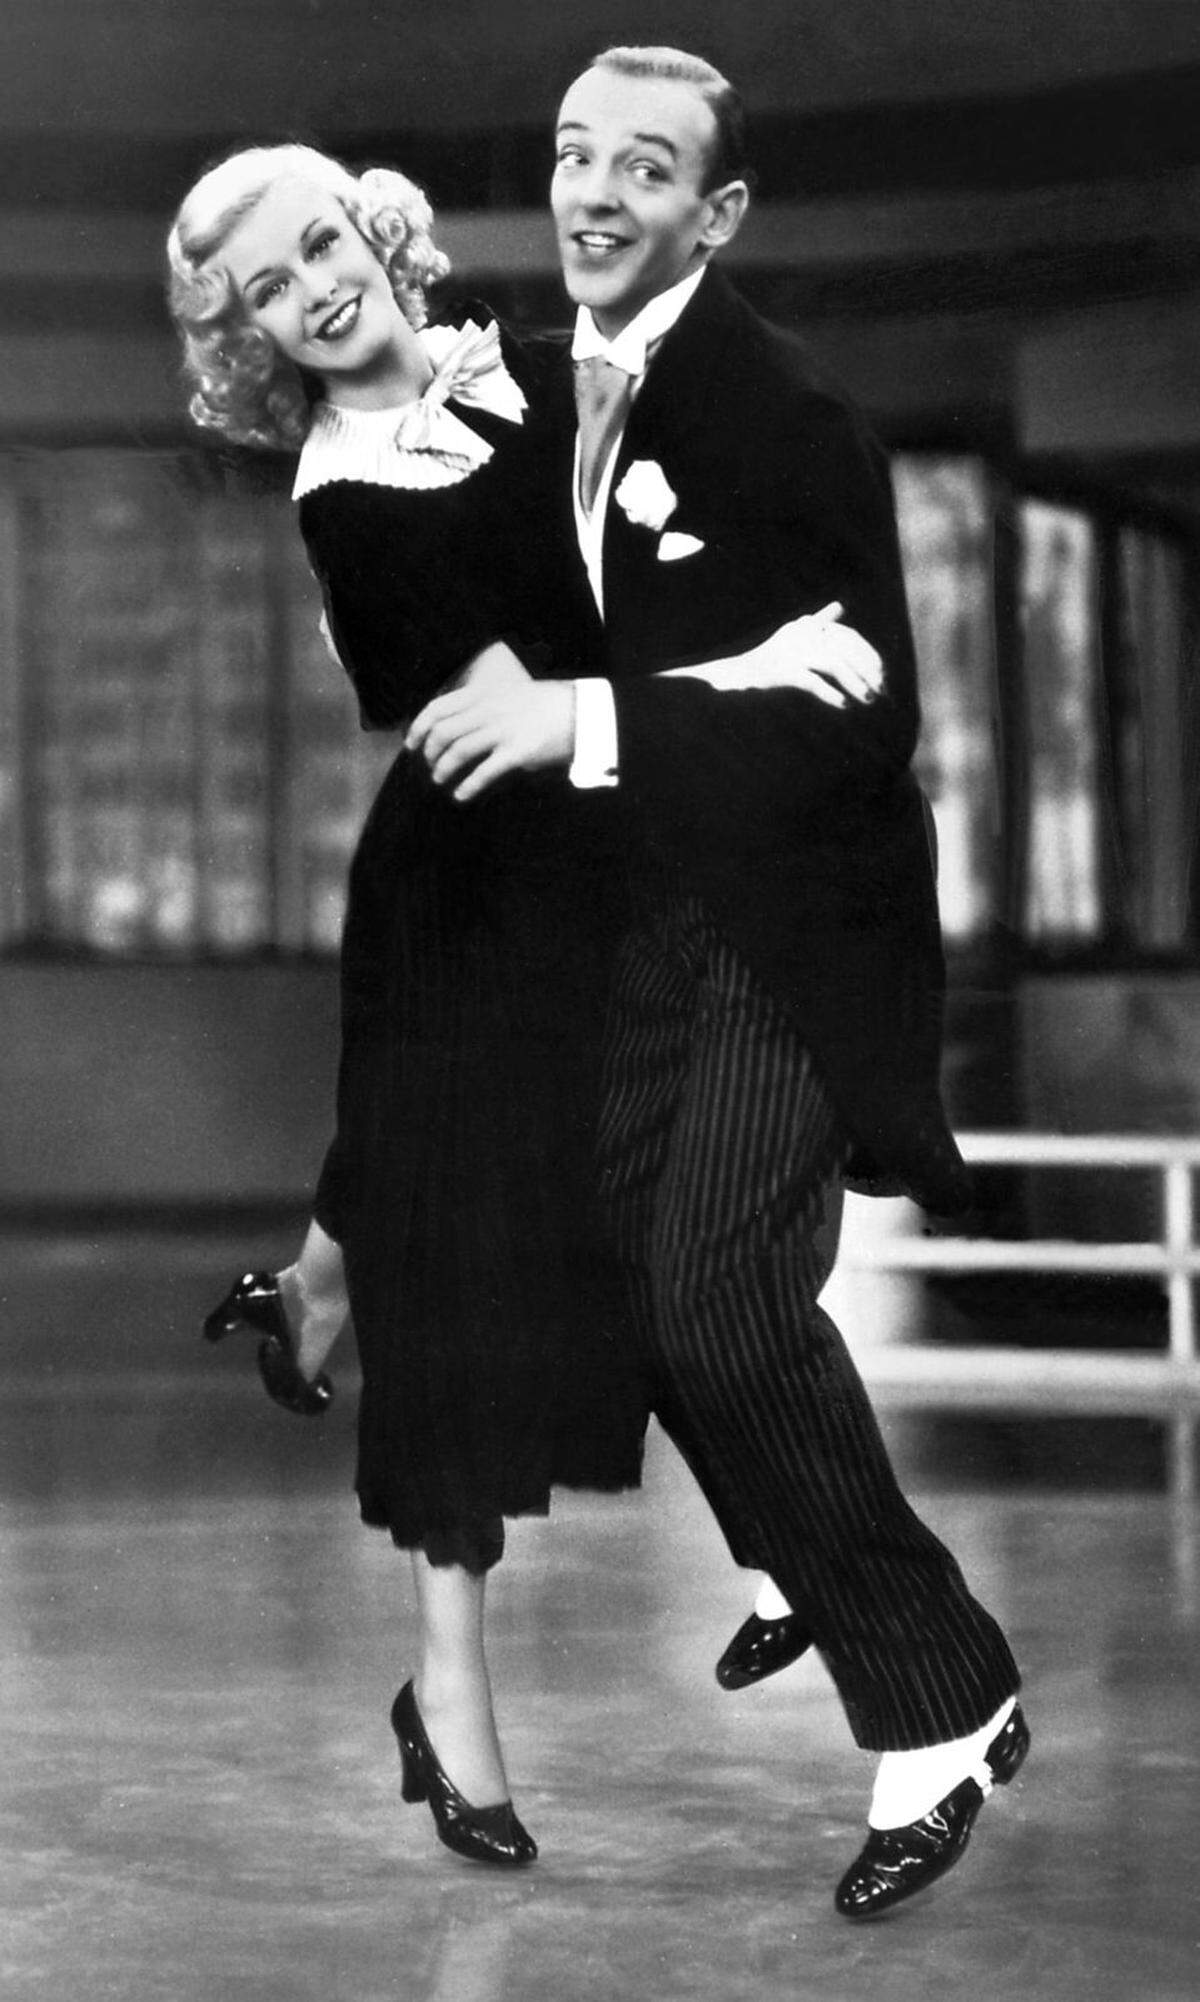 Die bekanntesten Filme sind "Top Hat" aus dem Jahr 1935 und "Swing Time" aus dem Jahr 1936. Das berühmte Lied "Cheek to cheek" wurde eigens für "Top Hat" von Irving Berlin geschrieben und war fünf Wochen lang Nummer eins in den Charts, die damals "Your Hit Parade" hießen.